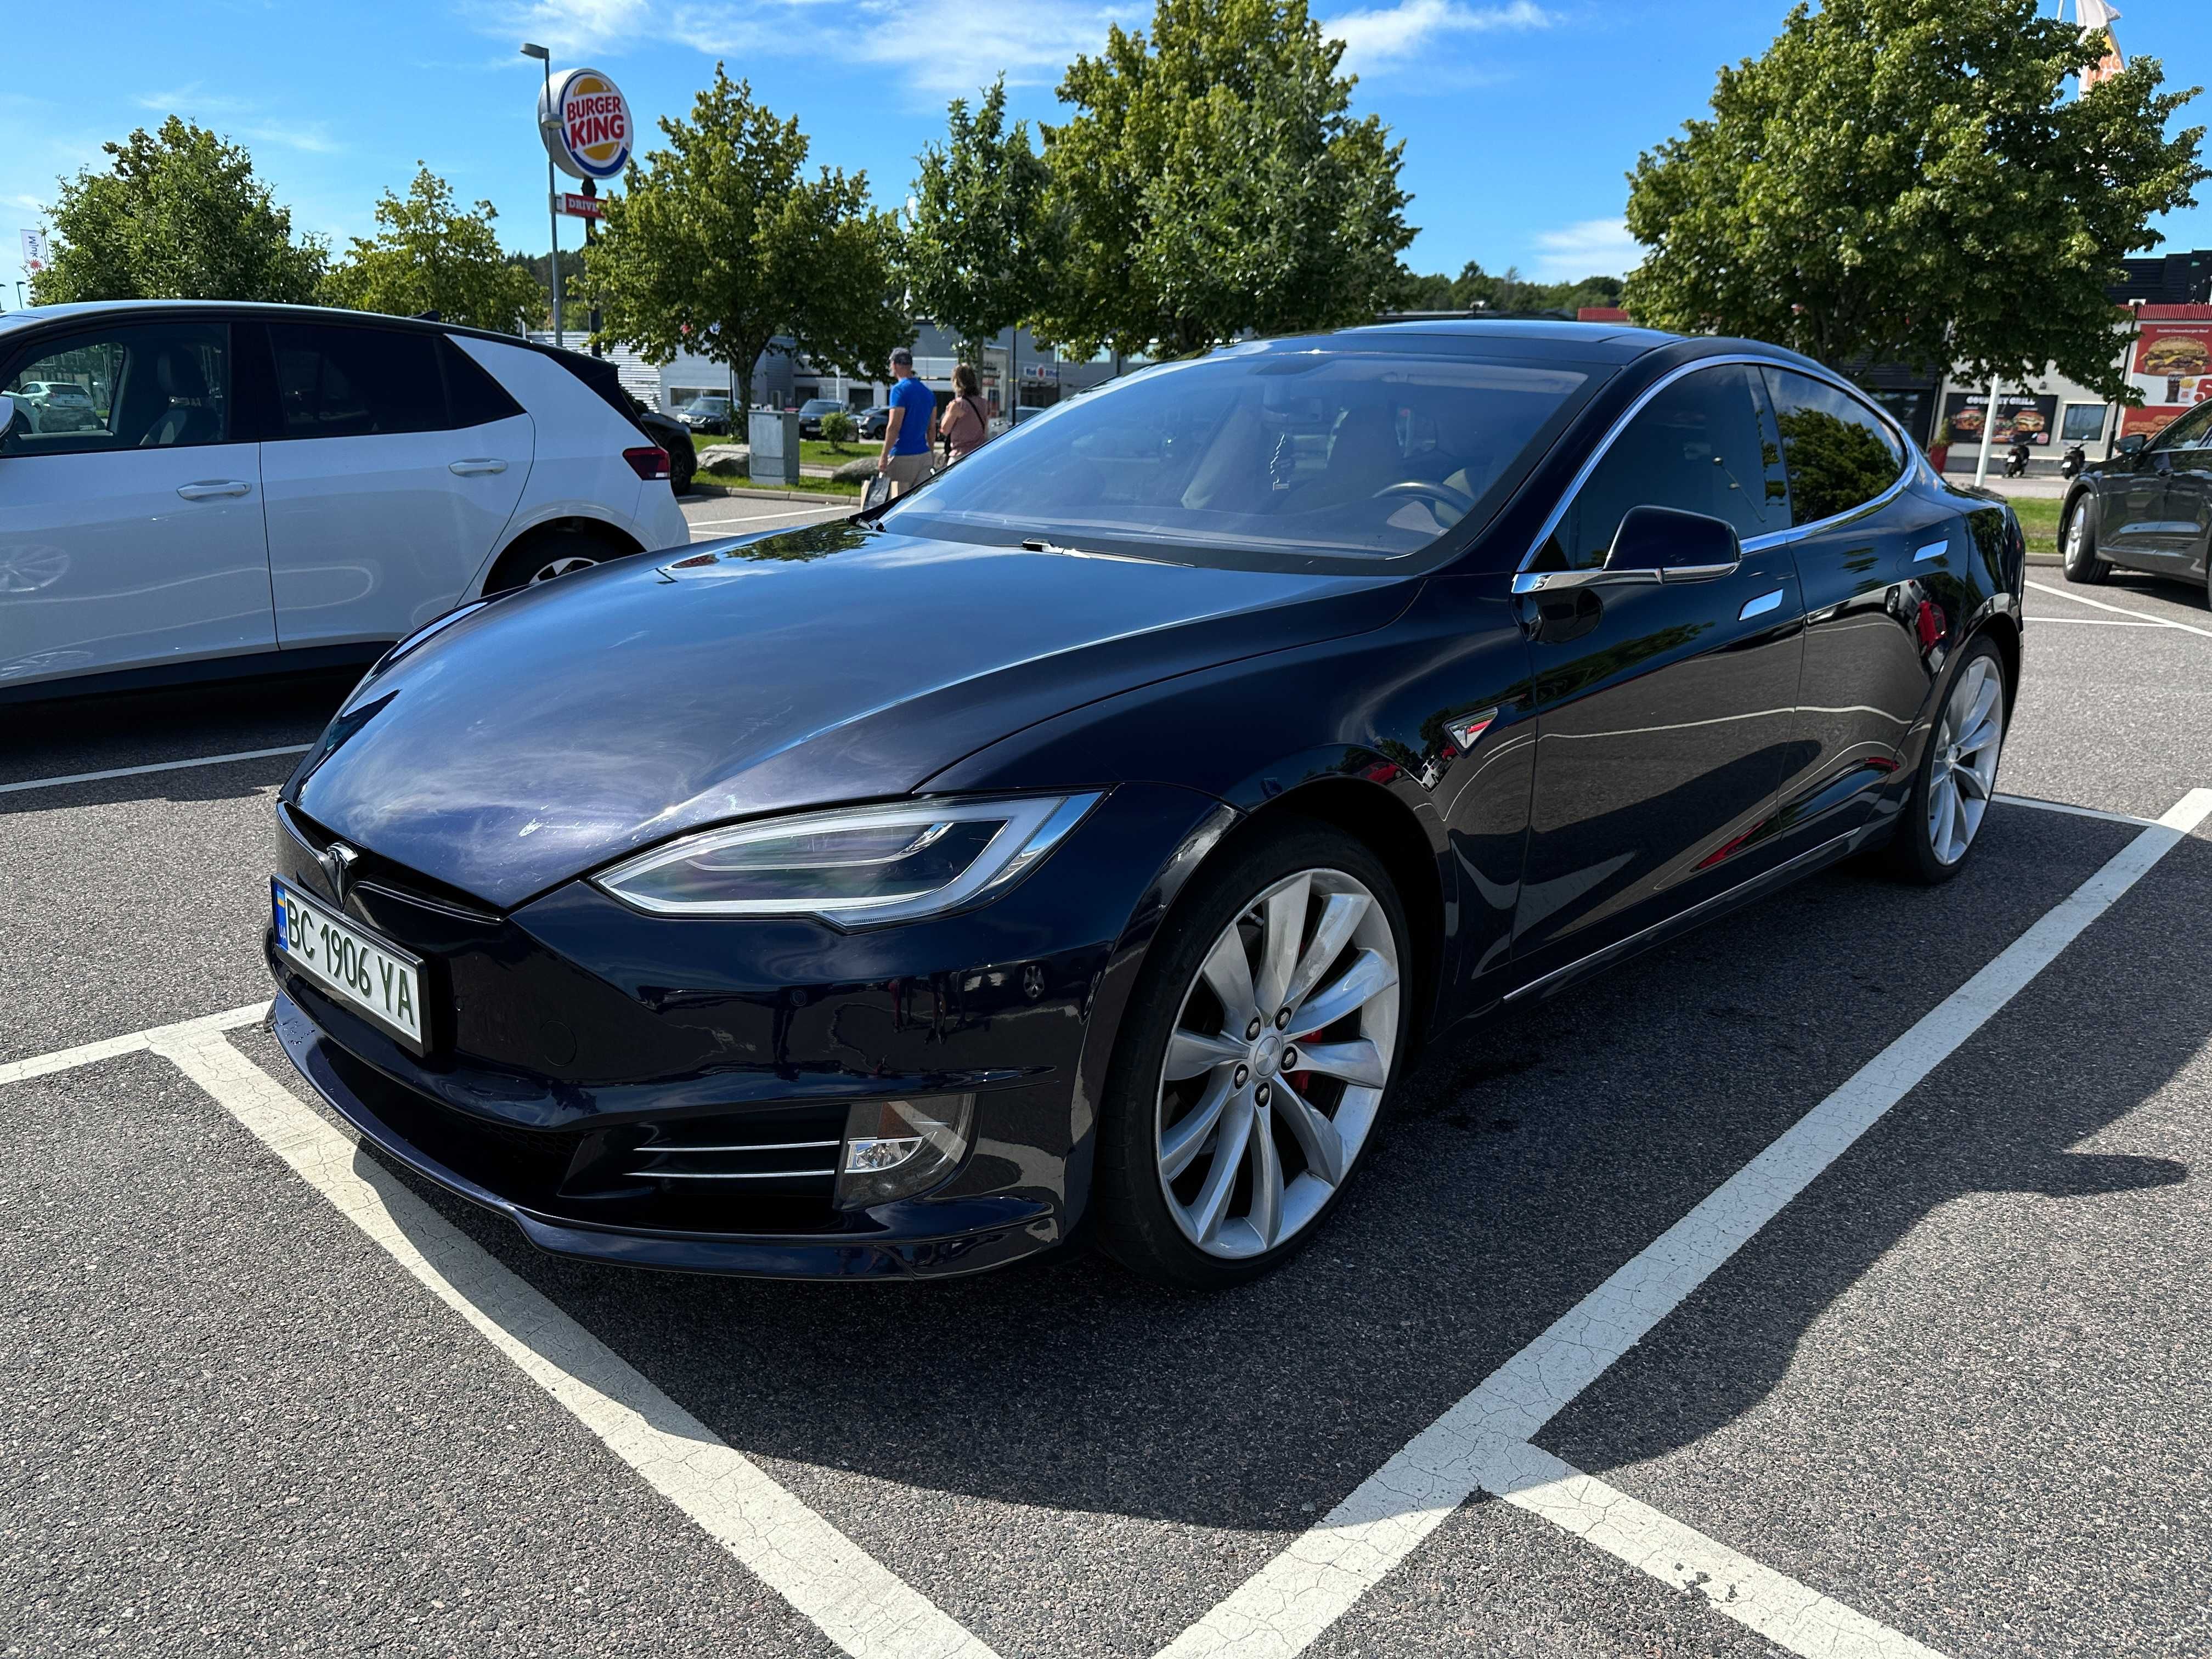 Tesla nodel S для Європи,  кредит.